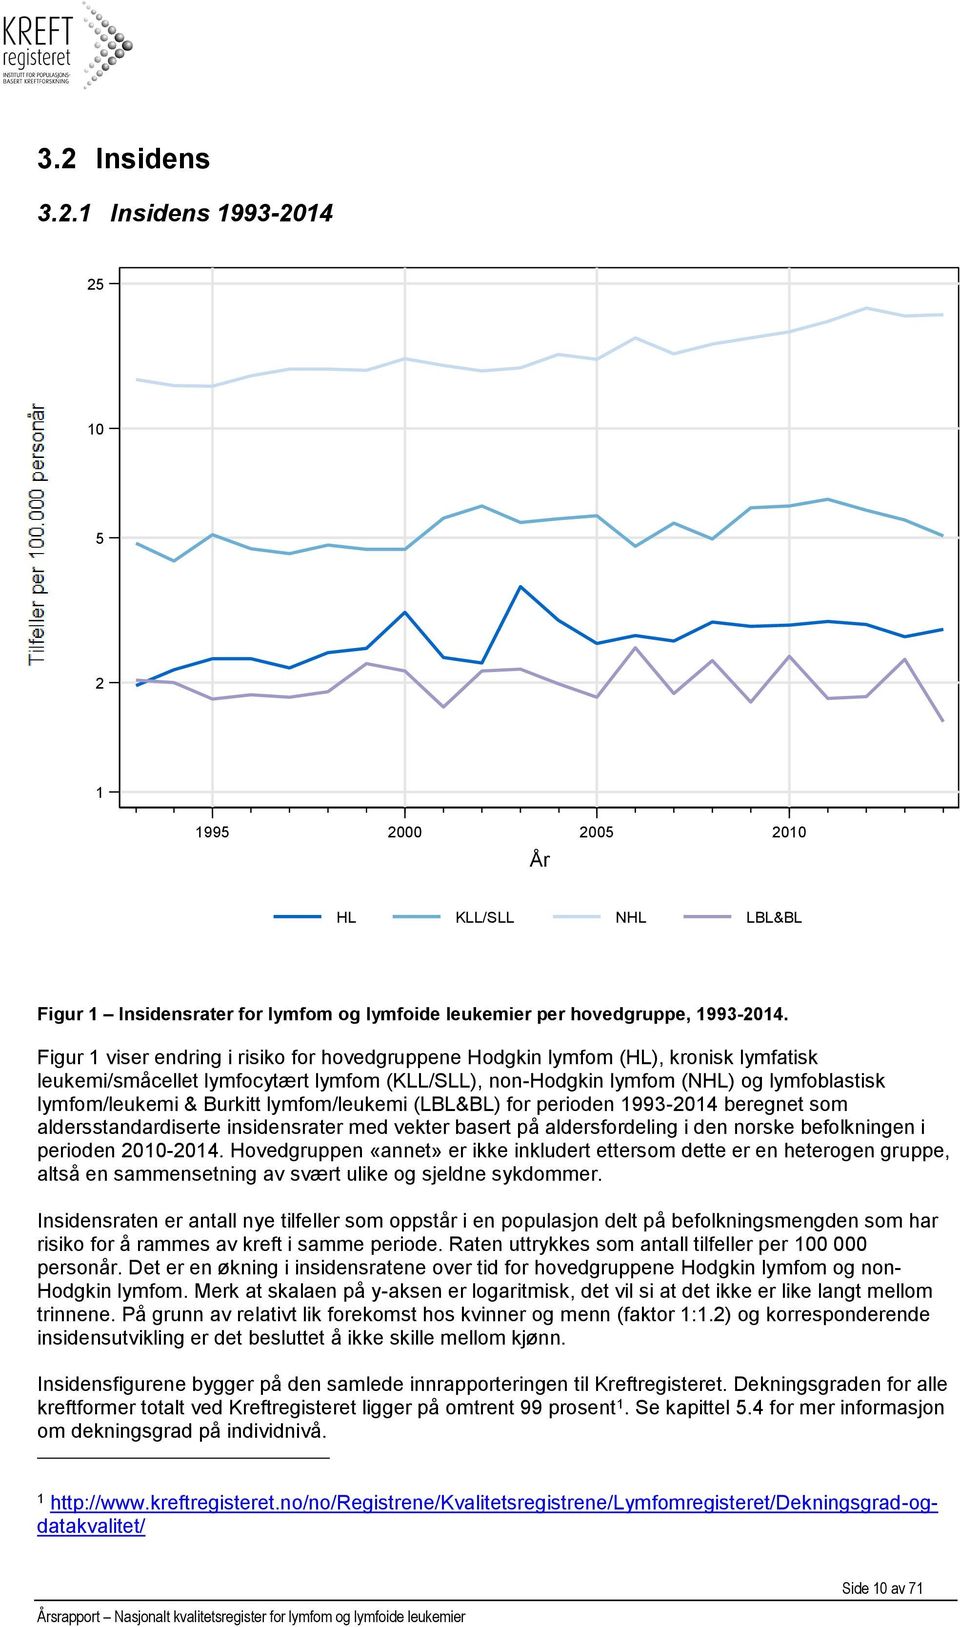 Burkitt lymfom/leukemi (LBL&BL) for perioden 1993-2014 beregnet som aldersstandardiserte insidensrater med vekter basert på aldersfordeling i den norske befolkningen i perioden 2010-2014.